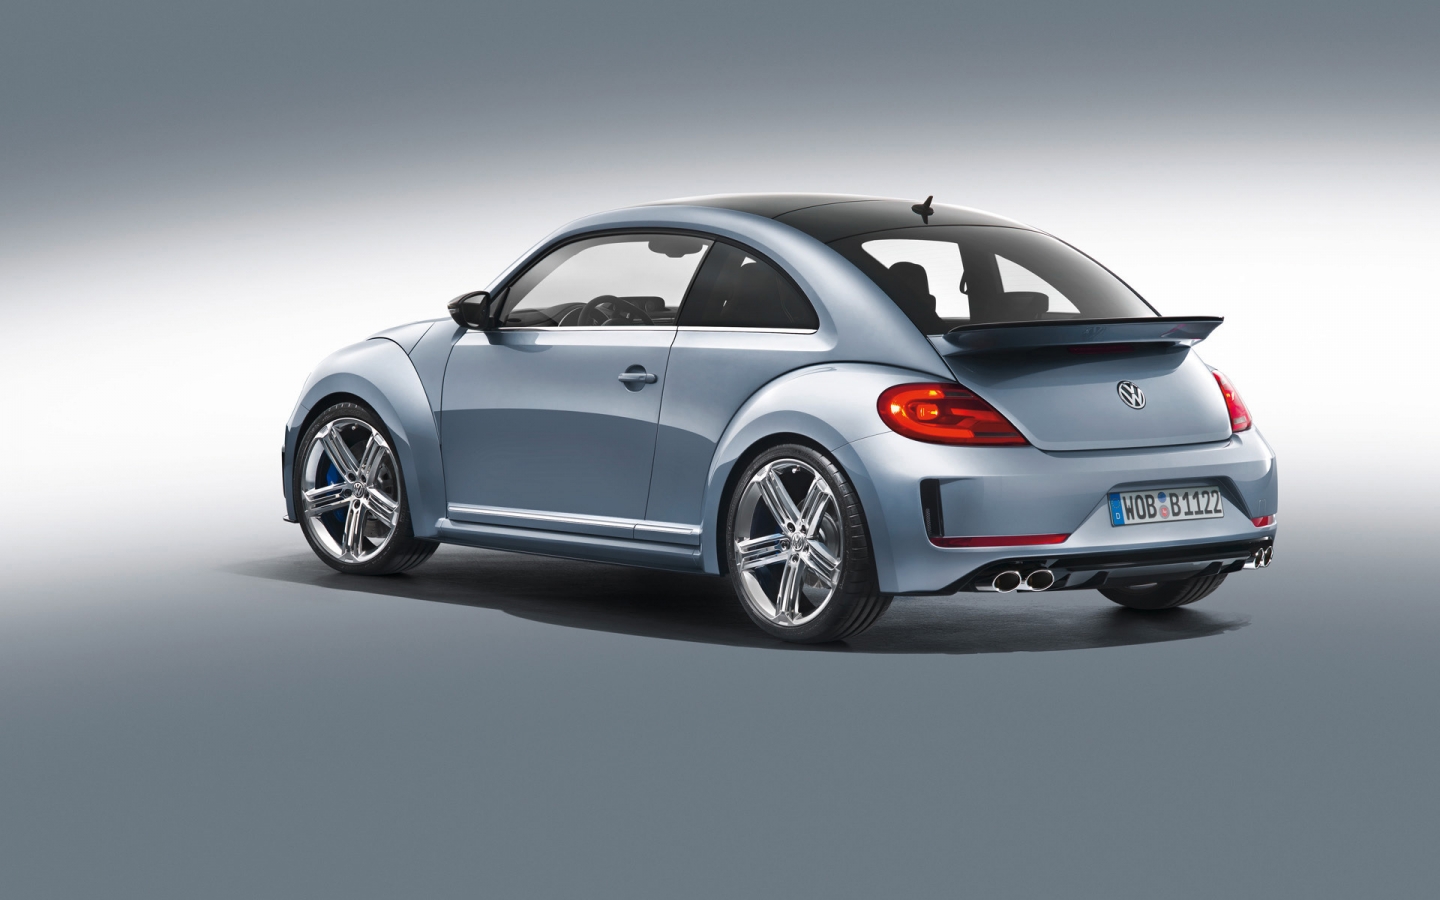 2011 Volkswagen Beetle R Concept Studio for 1440 x 900 widescreen resolution